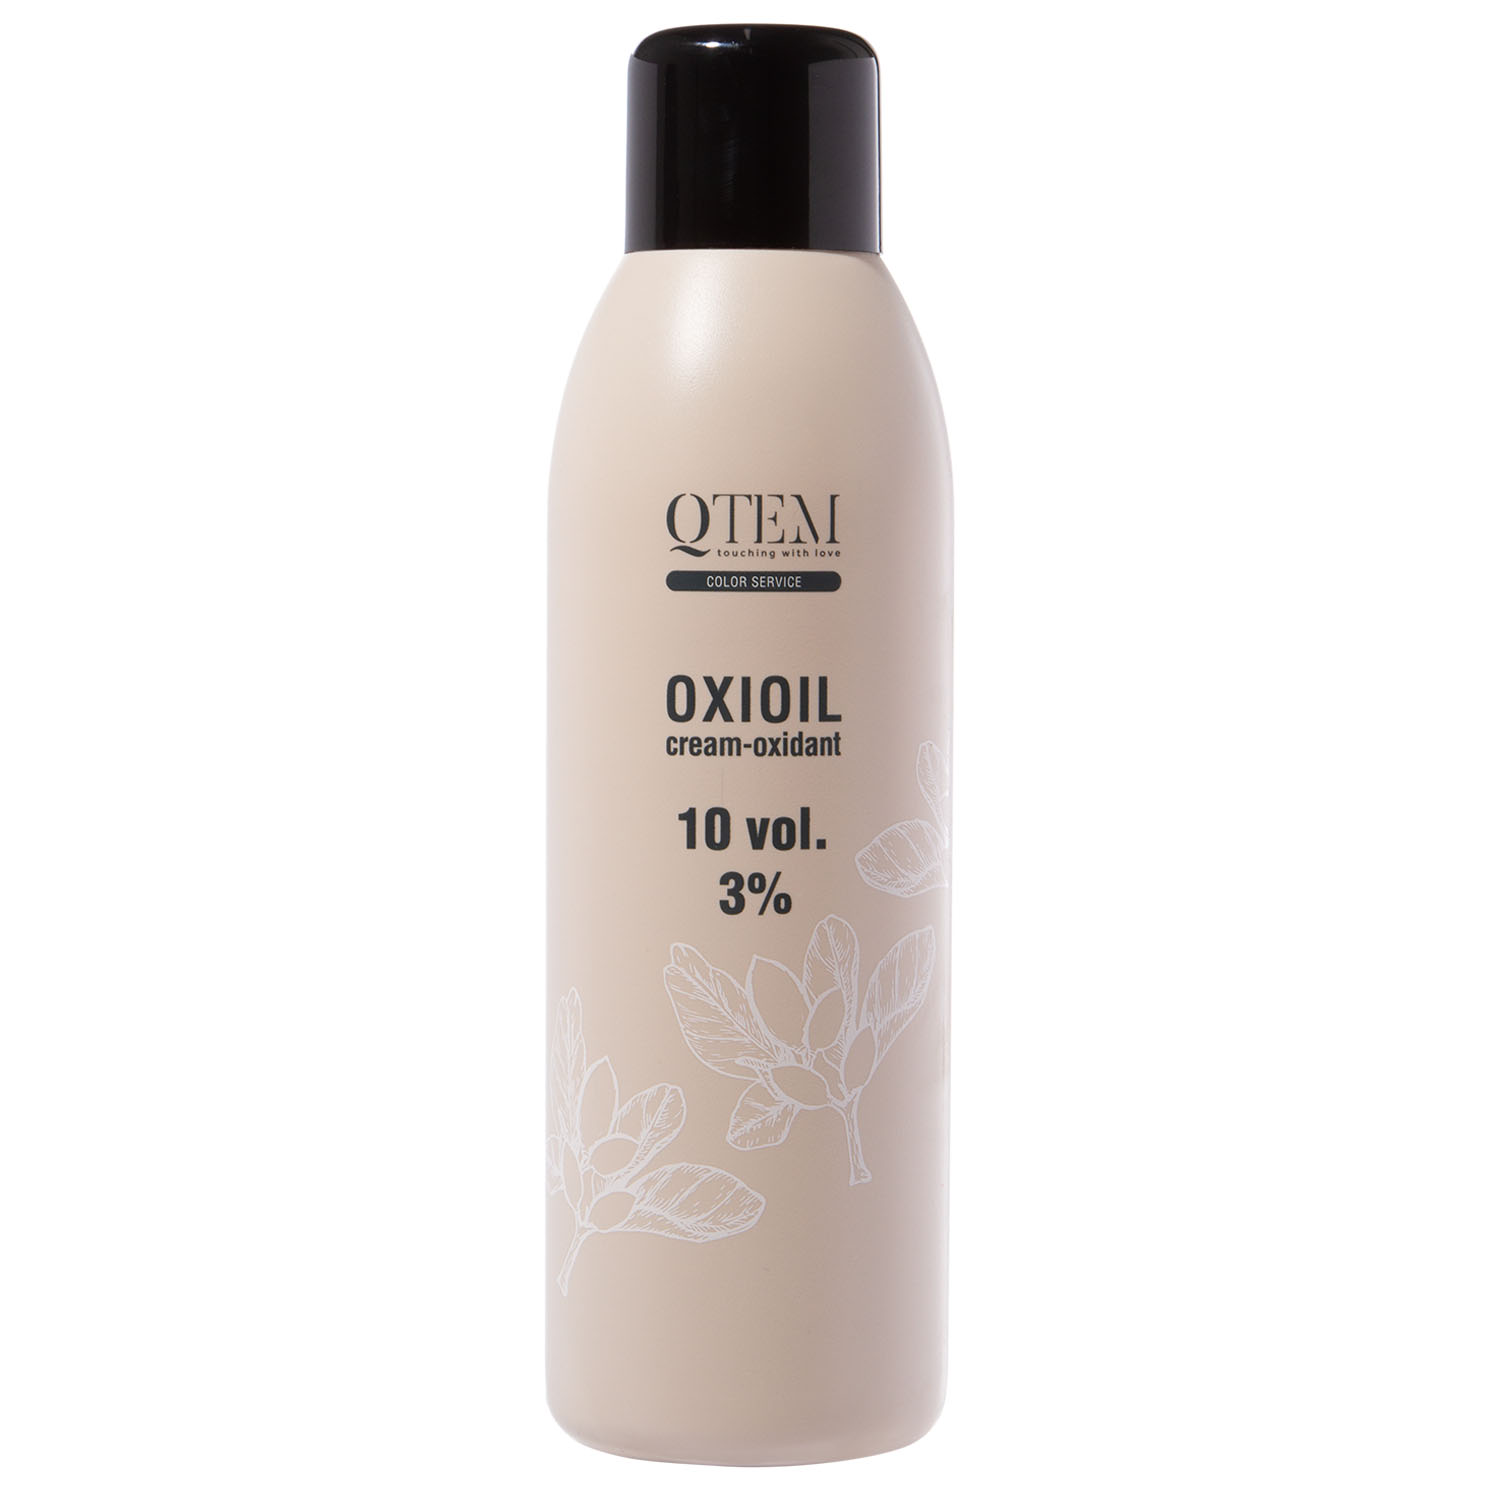 Qtem Универсальный крем-оксидант Oxioil 3% (10 Vol.), 1000 мл (Qtem, Color Service)